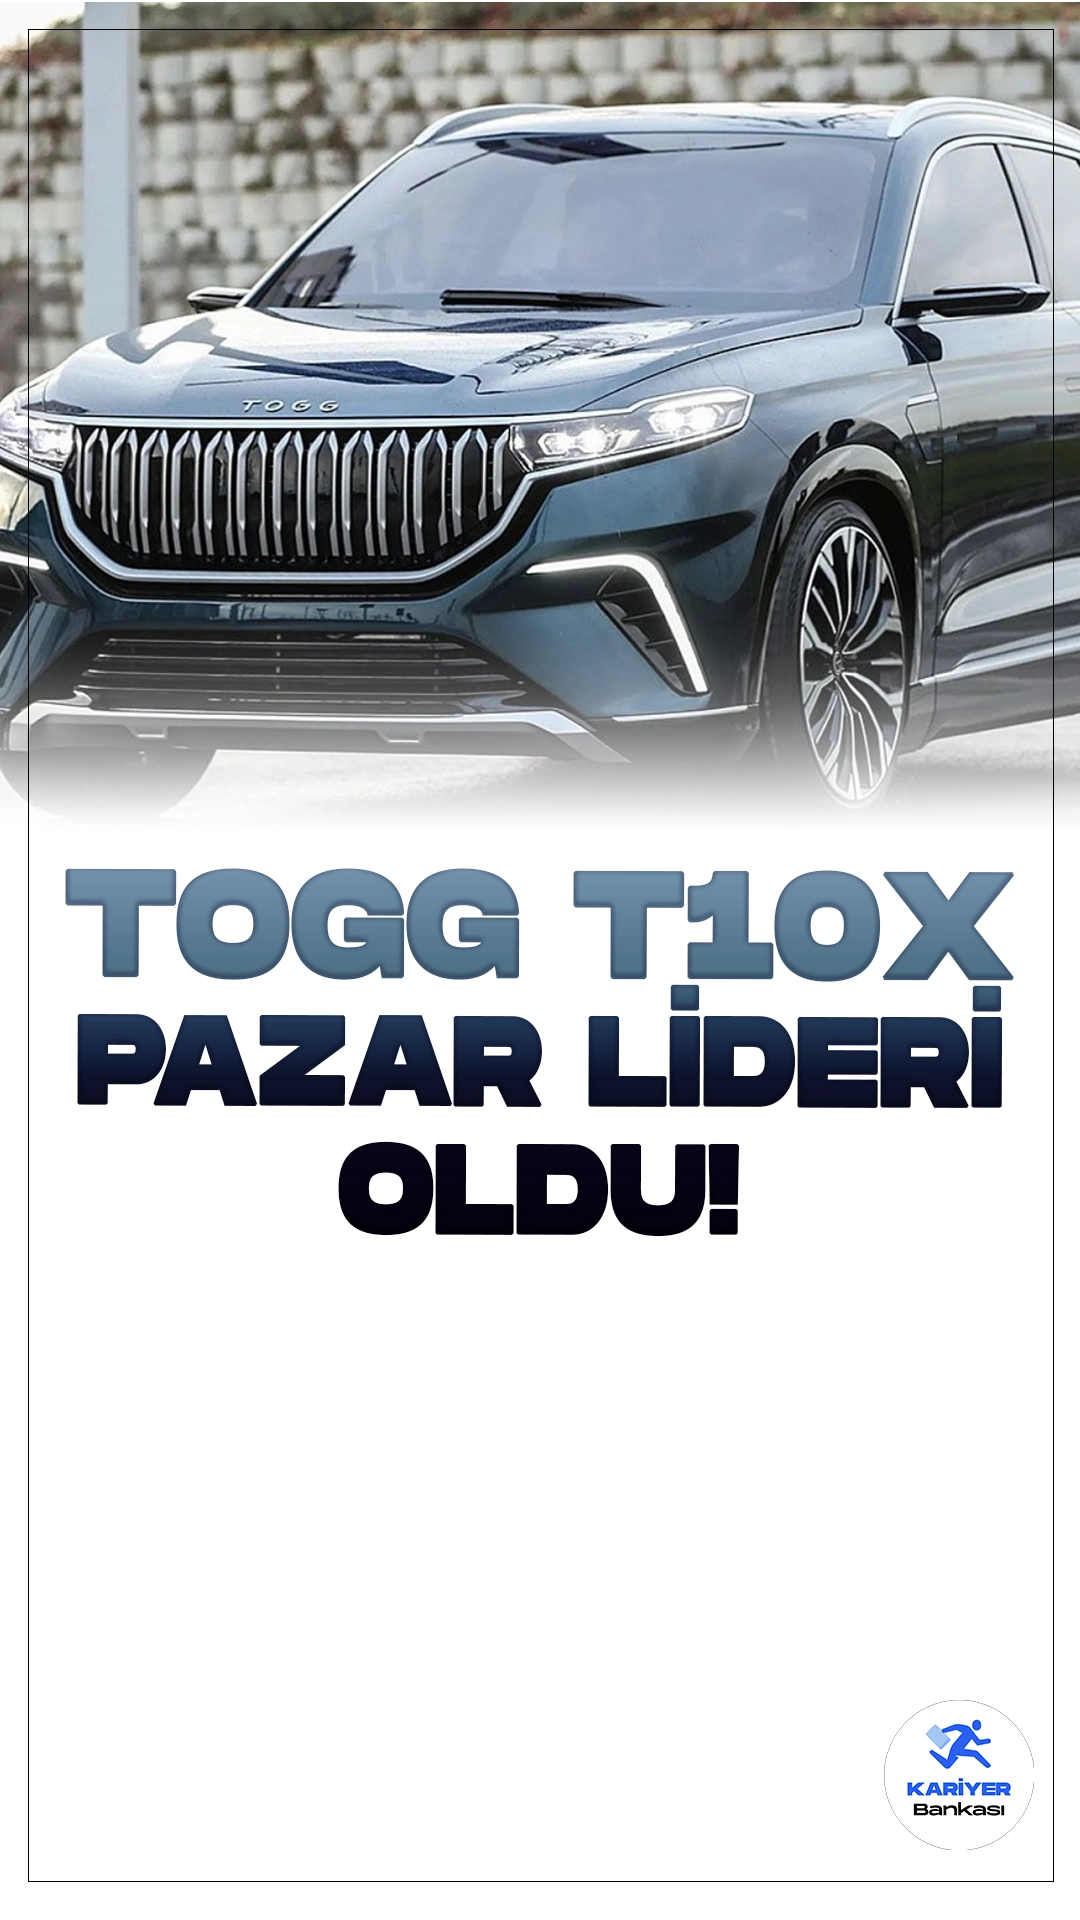 Togg T10X Elektrikli Otomobil Satışlarında Pazar Lideri.Elektrikli otomobil markaları arasında yükselişini sürdüren Togg, mayıs ayında da pazar liderliğini sürdürdü. Togg, geçen ay 4 bin 140 adetlik satışla en yakın rakibine 3 bin 590 adet fark attı.